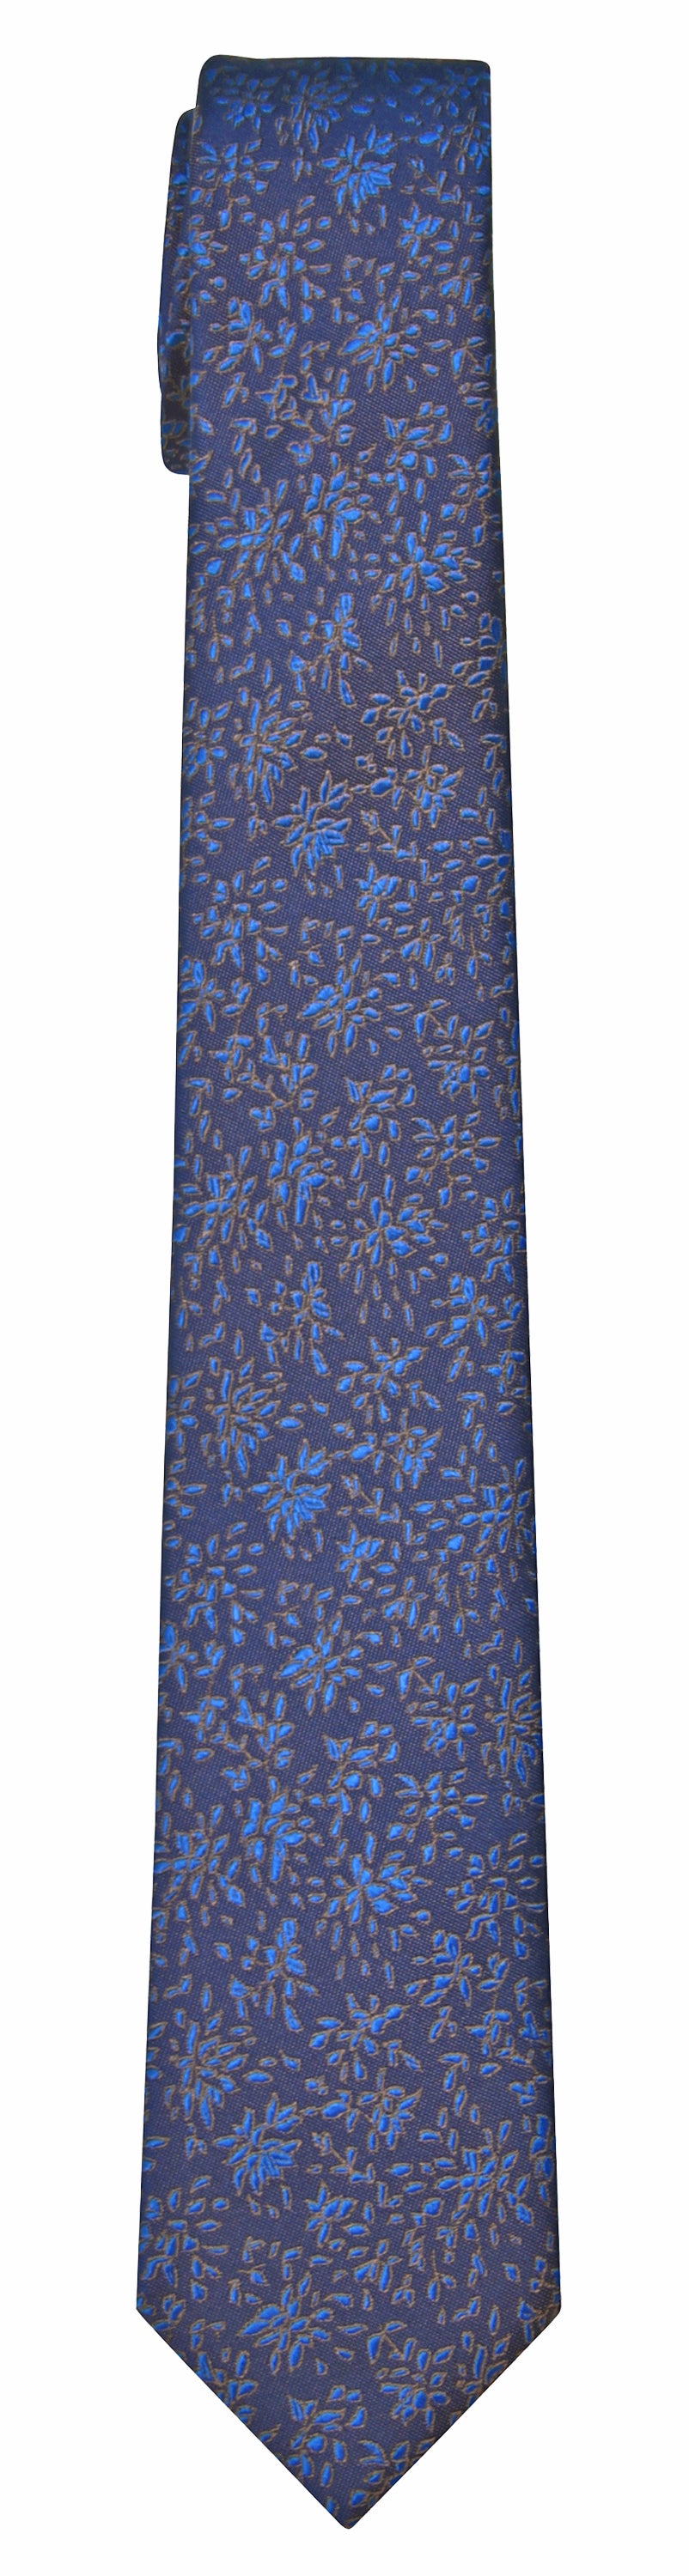 Mimi Fong Petites Fleurs Tie in Blue